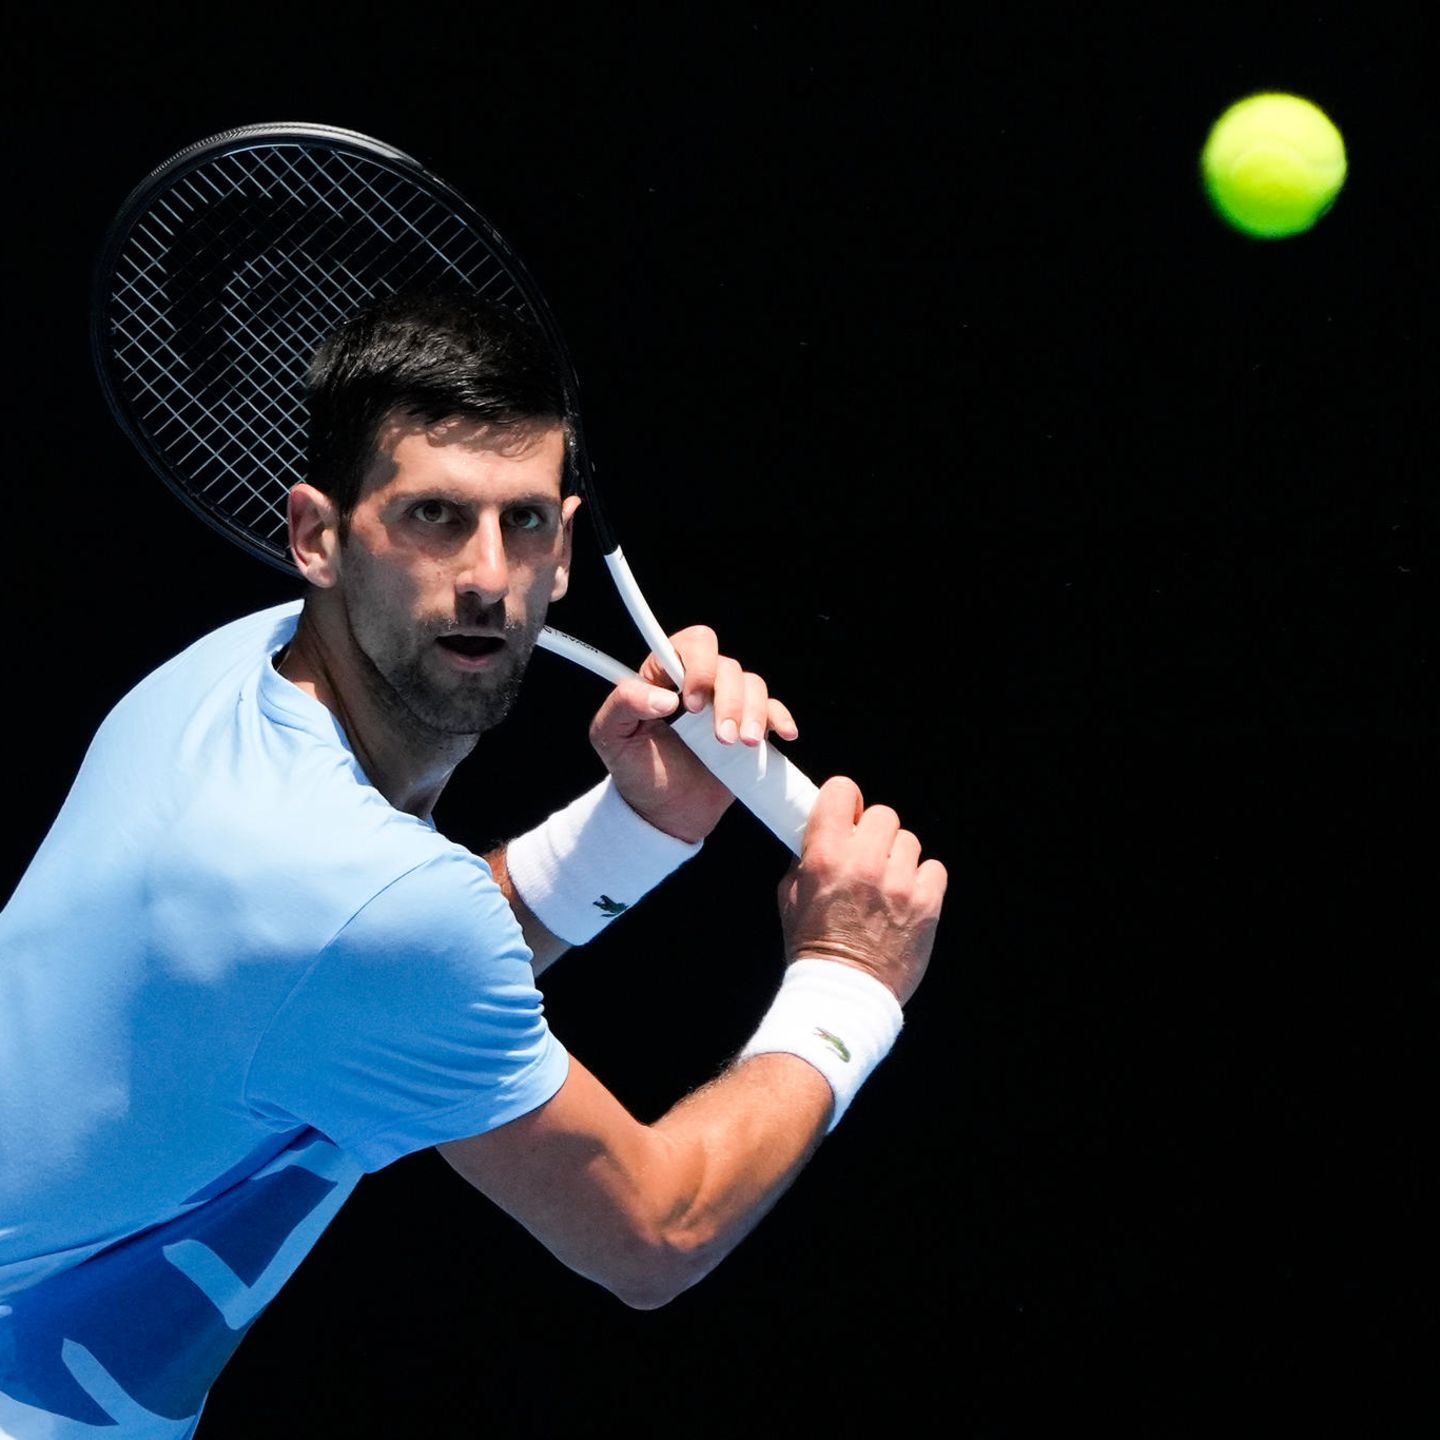 Novak Djokovic zurück in Australien weiter als ungeimpfter Favorit STERN.de